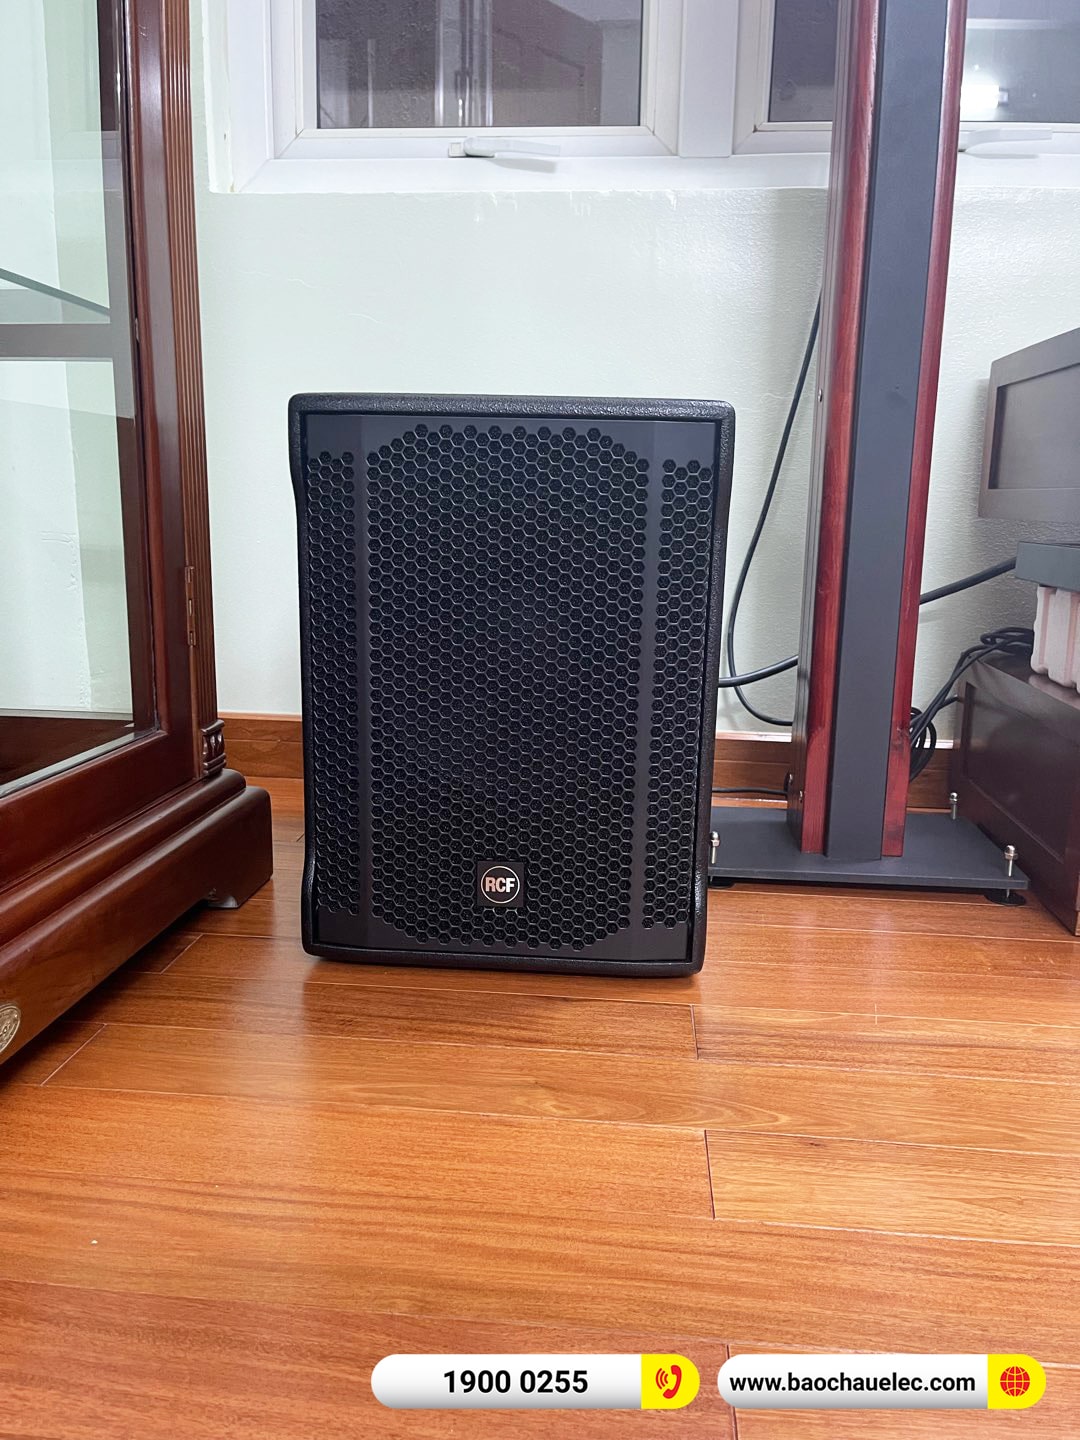 Lắp đặt dàn karaoke RCF hơn 141tr cho anh Nam tại Hà Nội (RCF CMAX 4110, JBL V6, K9900II Luxury, 702AS II, WB-5000S,…)